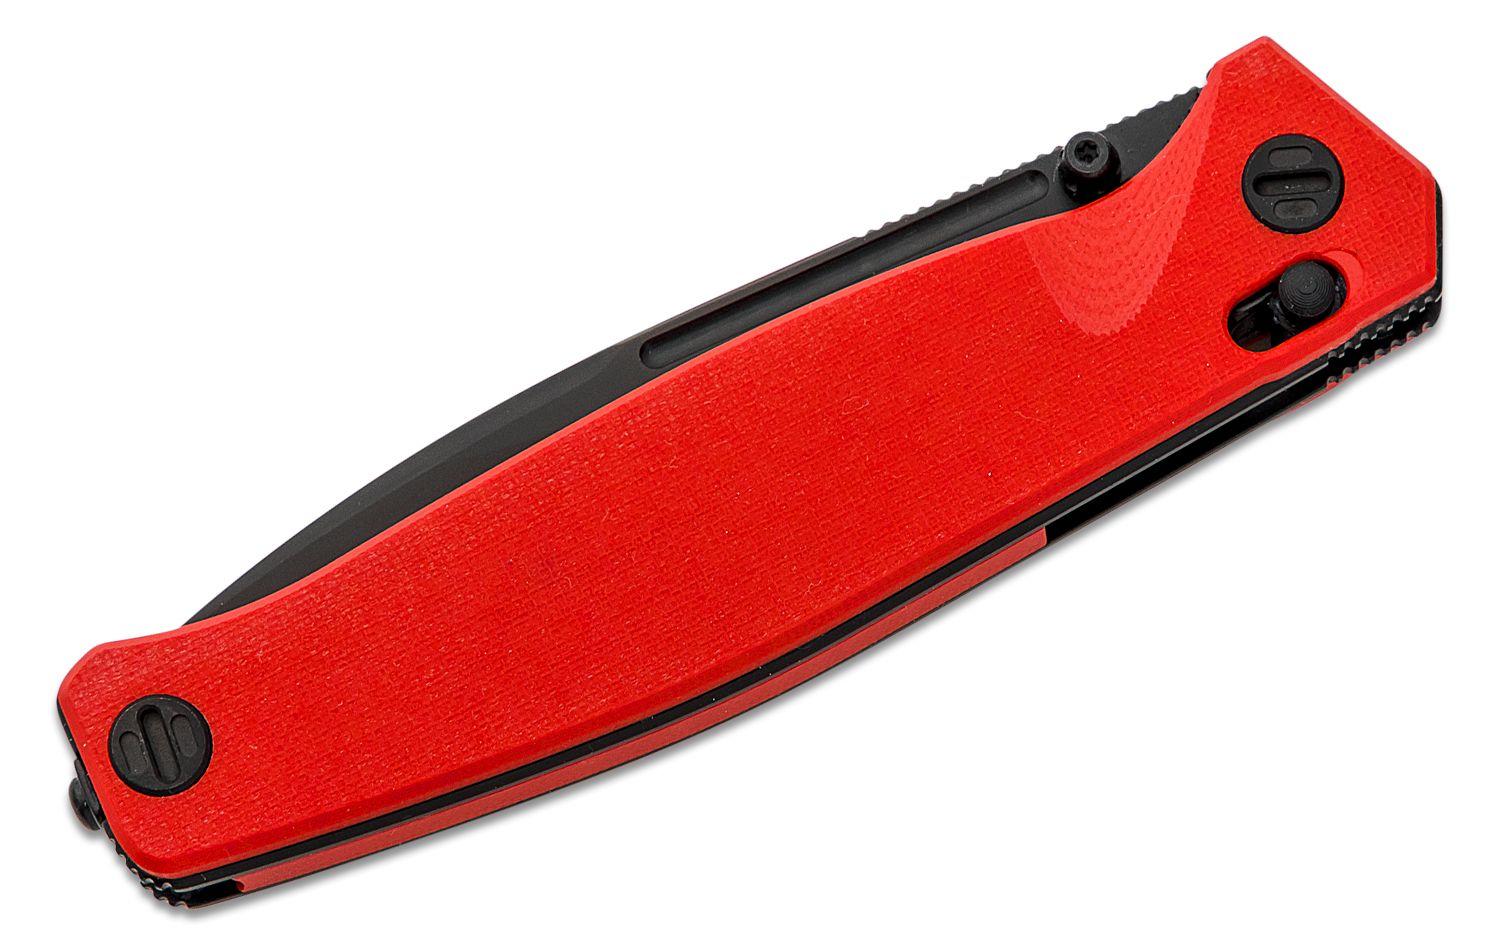 Real Steel Havran Slide Lock Pocket Knife K110 Blade and G10